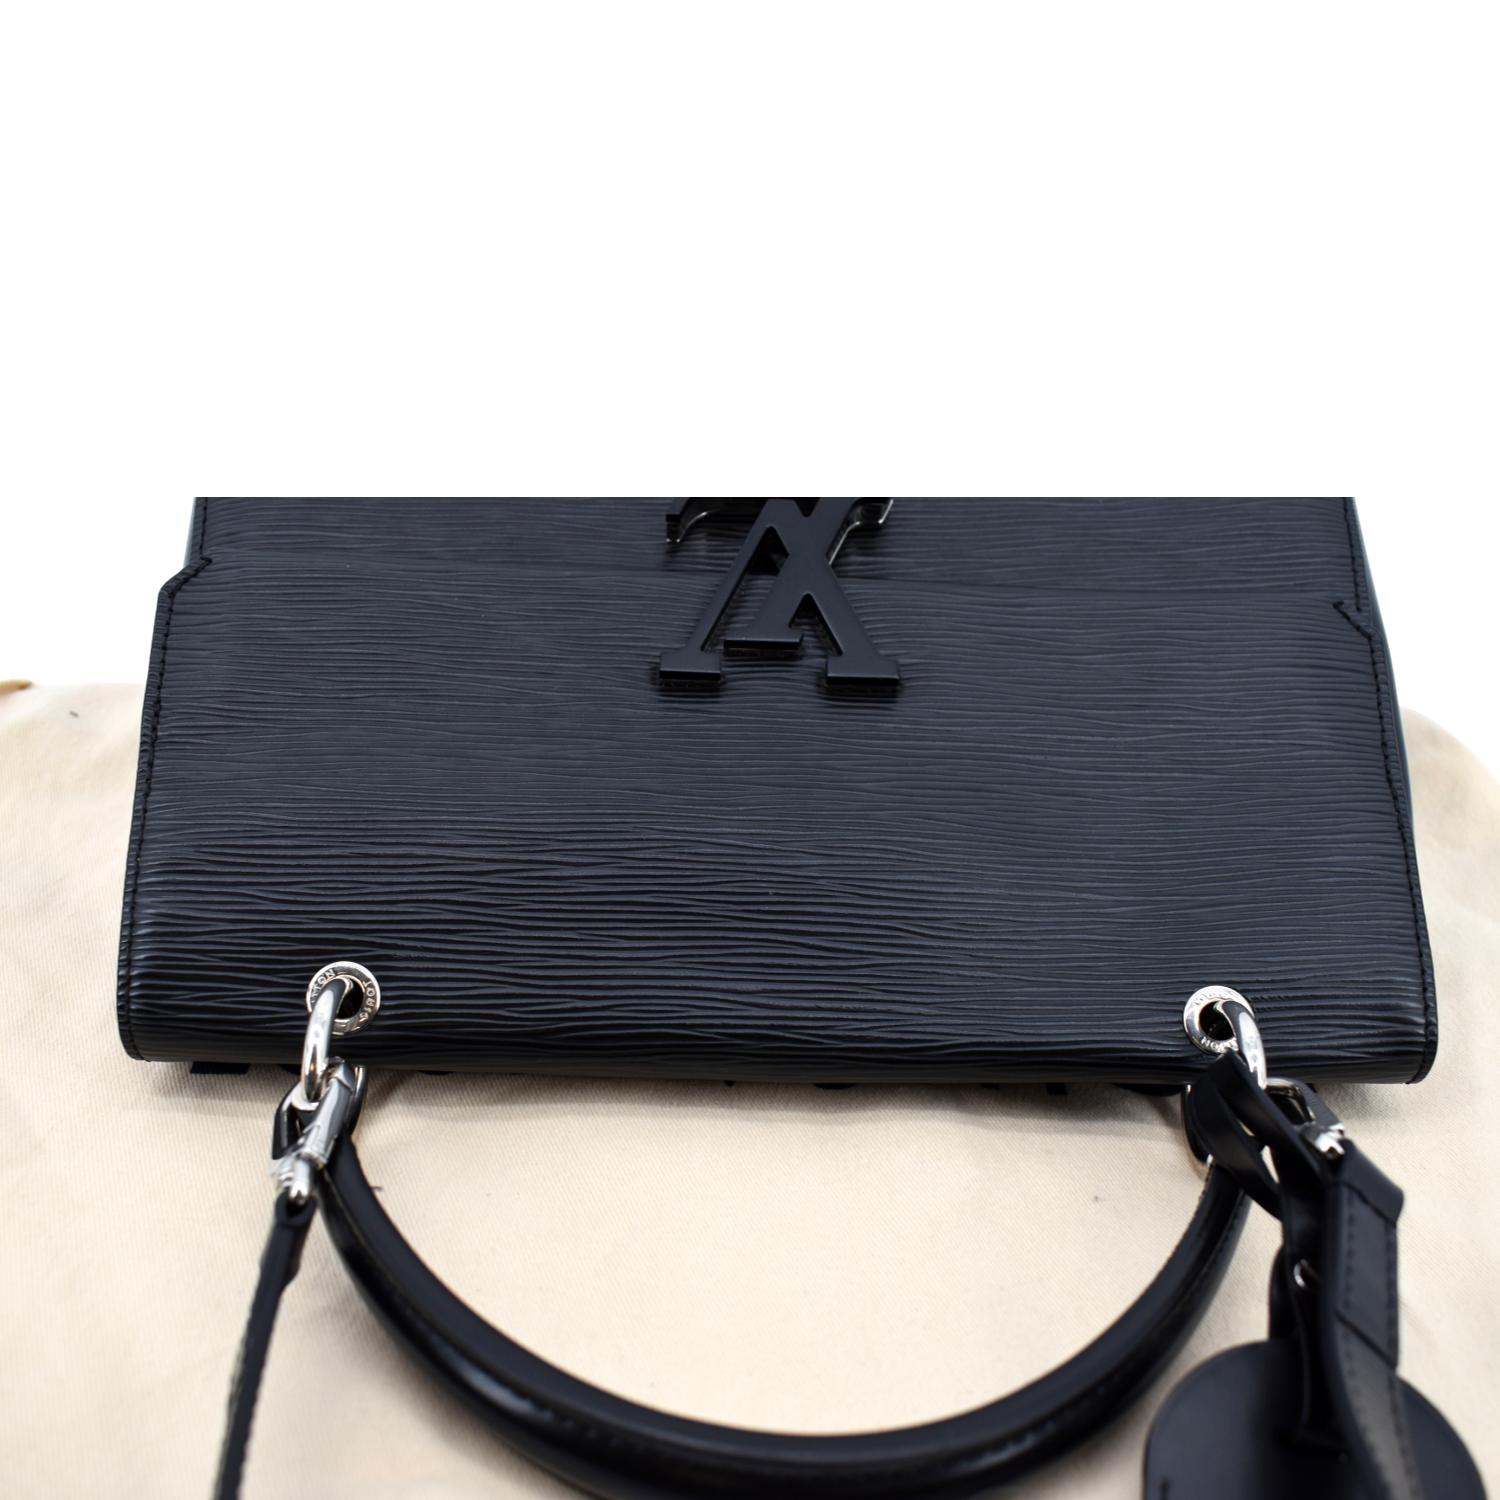 Louis Vuitton Grenelle Bag